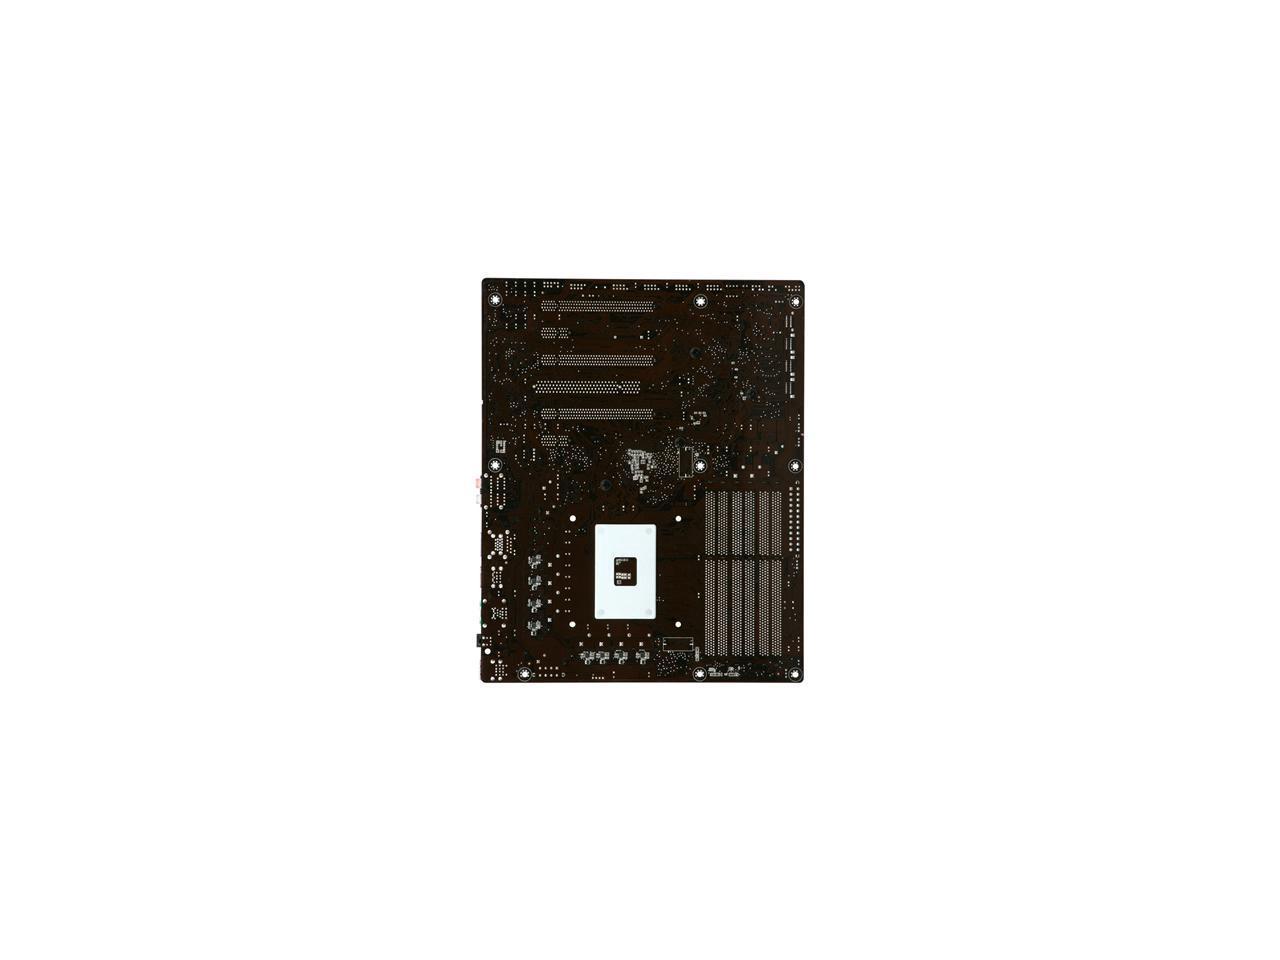 ASUS Sabertooth X58 LGA 1366 Intel X58 SATA 6Gb/s USB 3.0 ATX Intel Motherboard